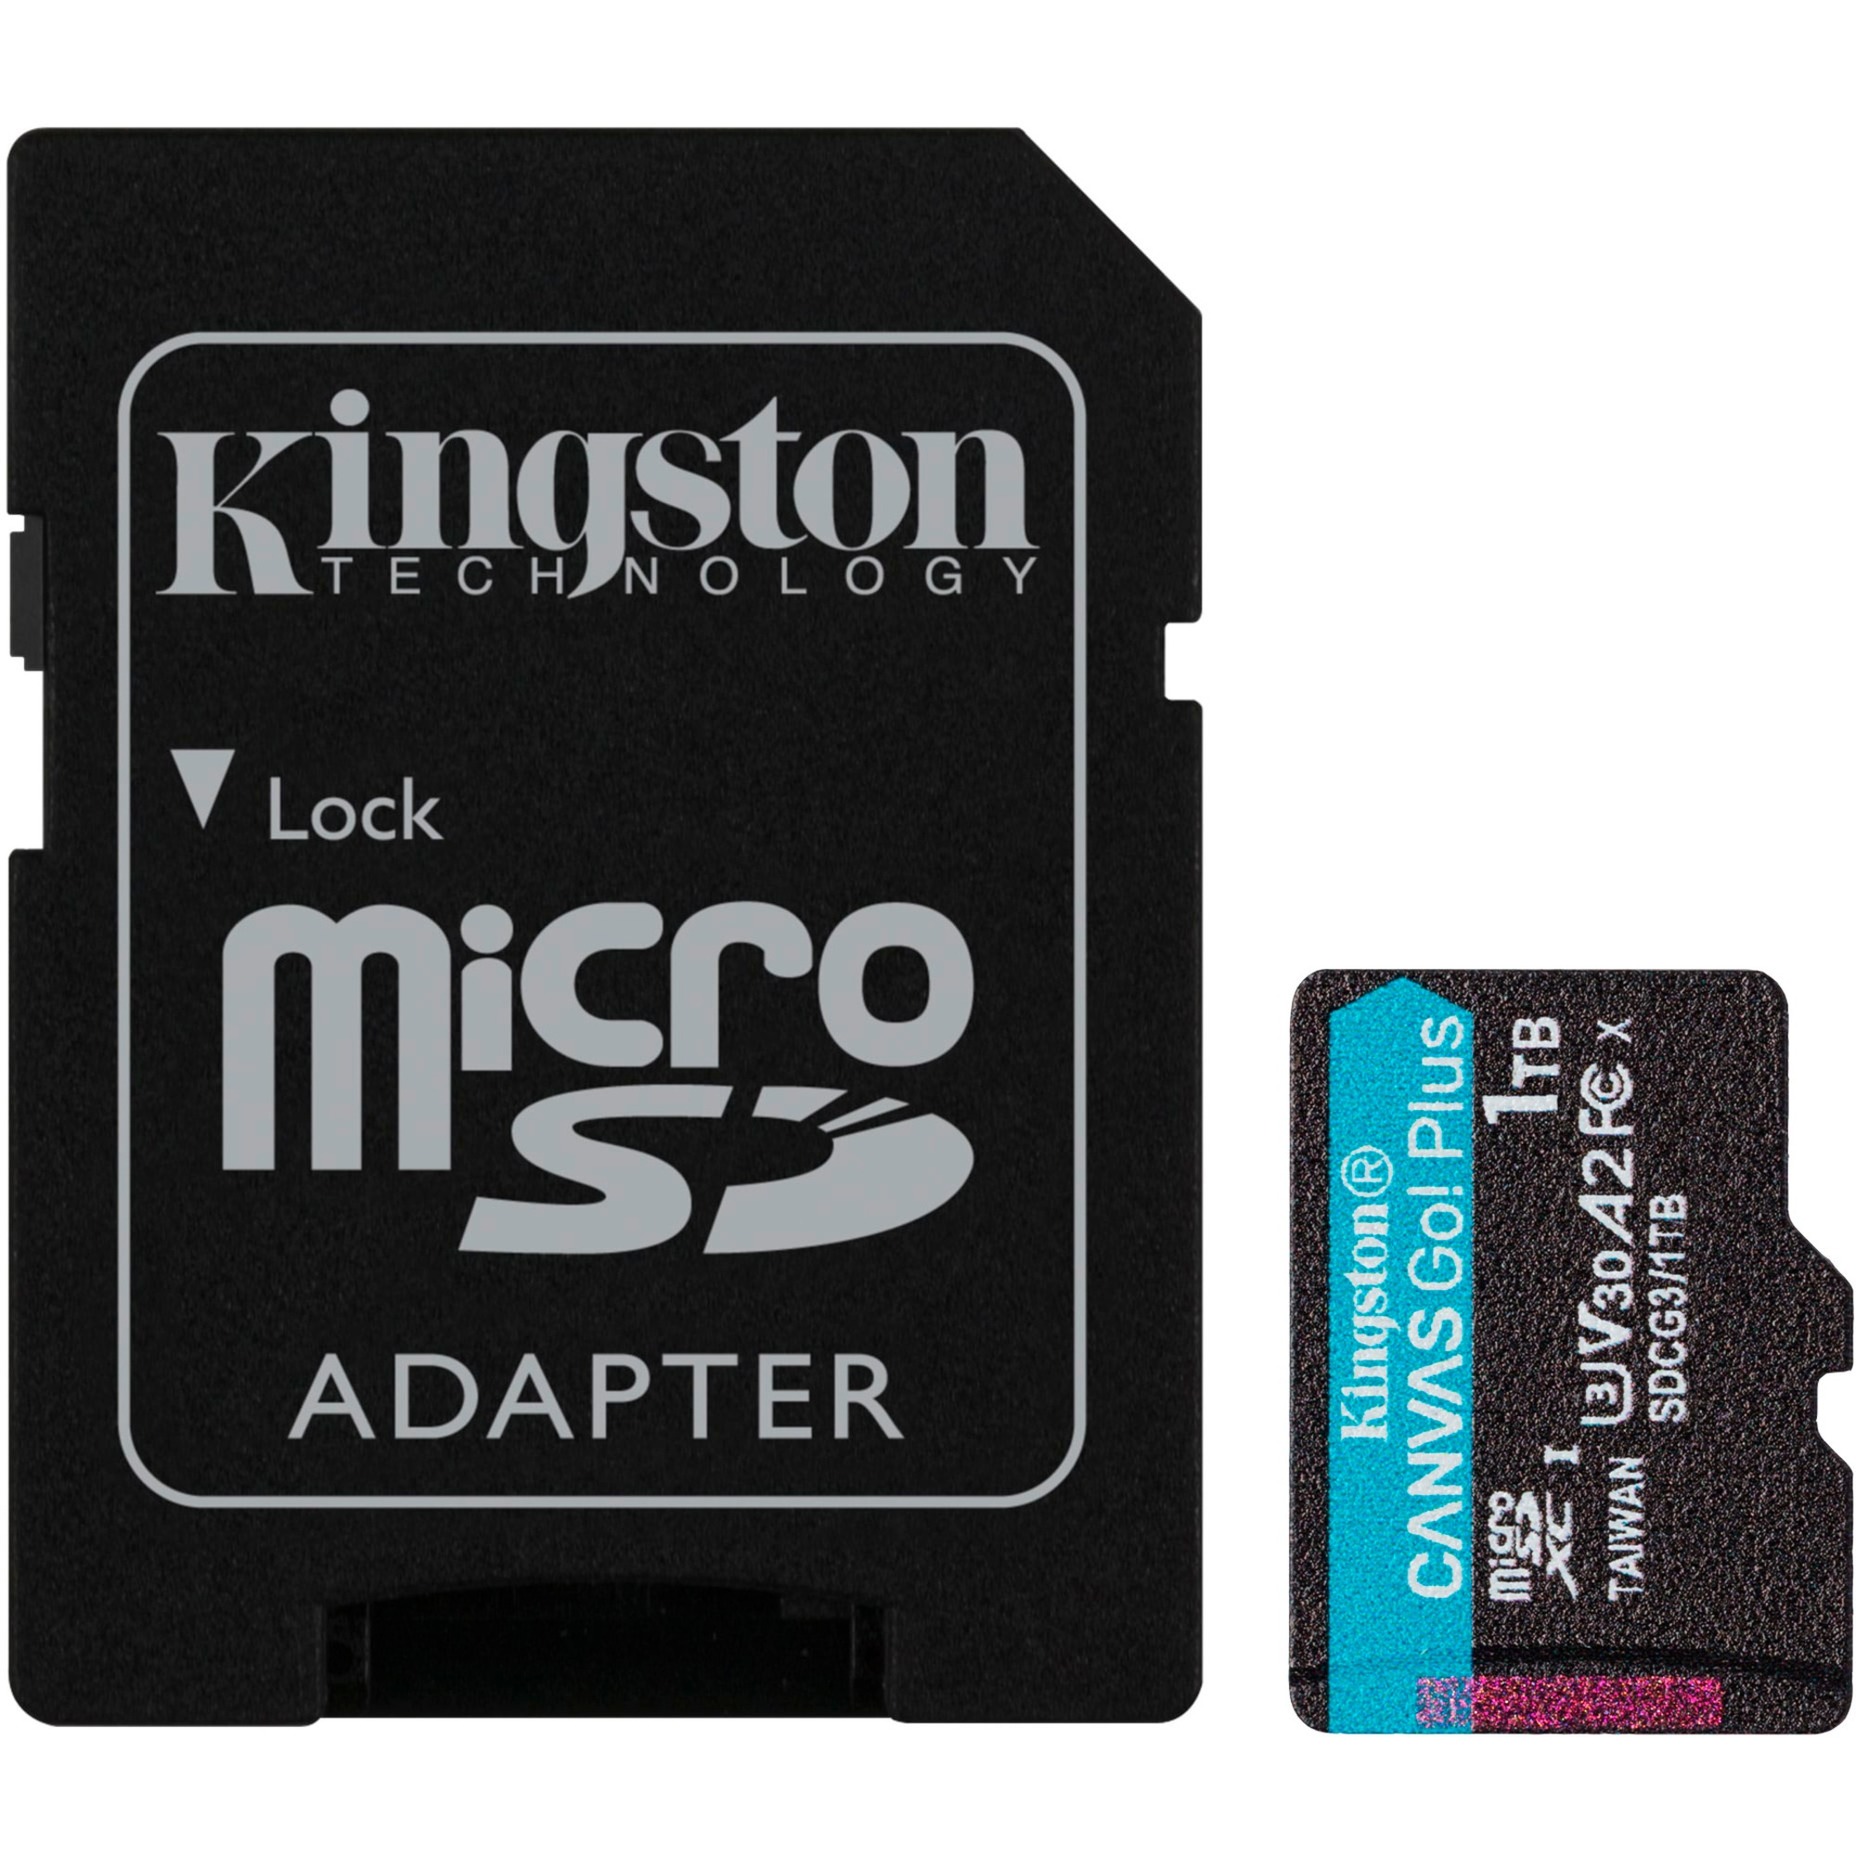 Canvas Go! Plus 1 TB microSDXC, Speicherkarte von Kingston